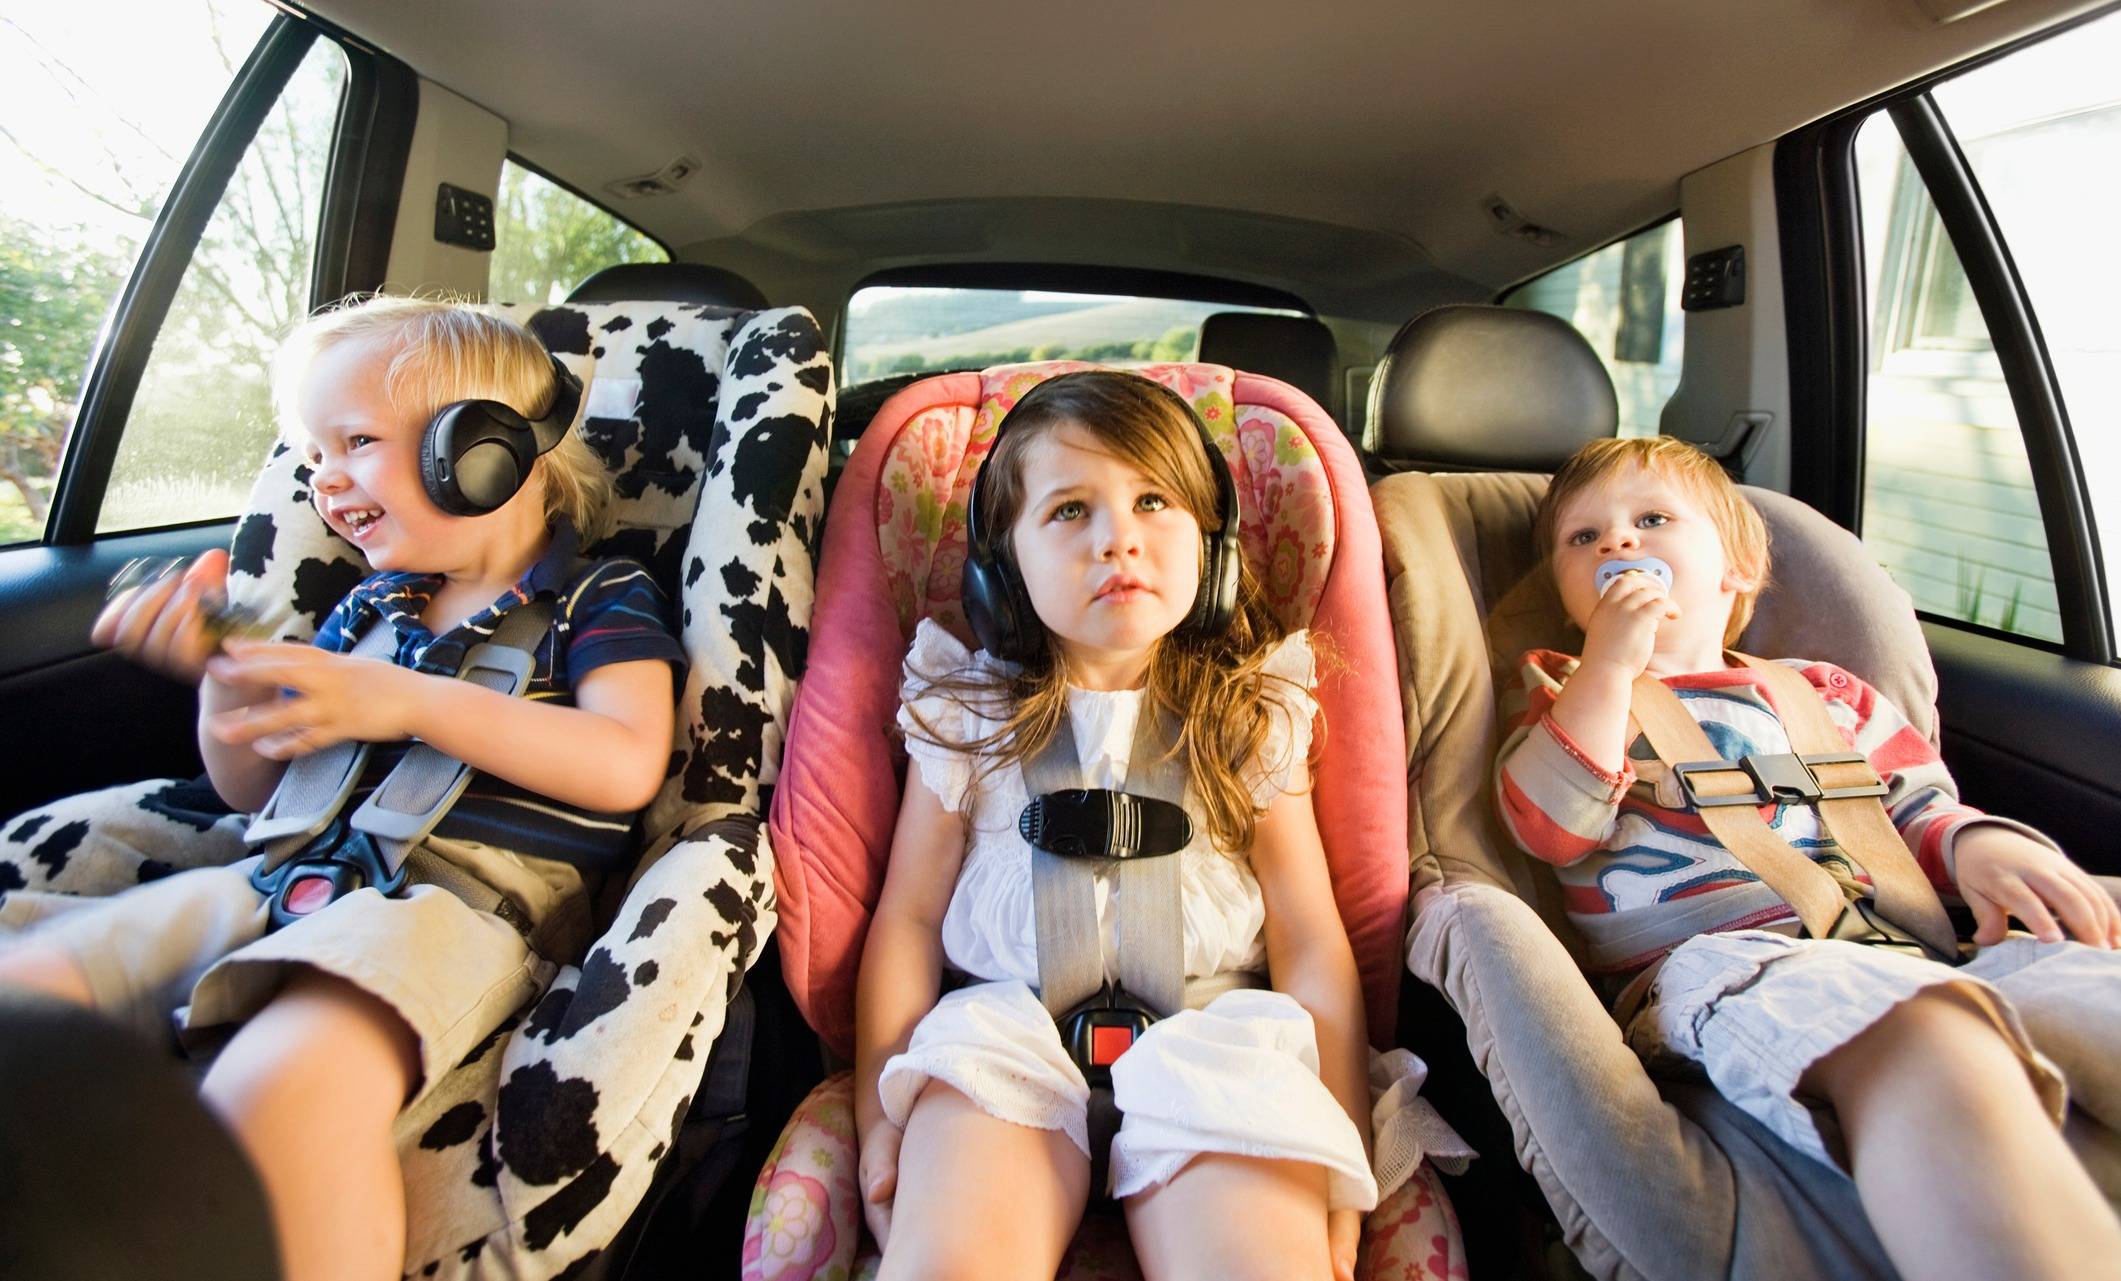 Ребенка укачивает в машине — что делать у детей до 1 года